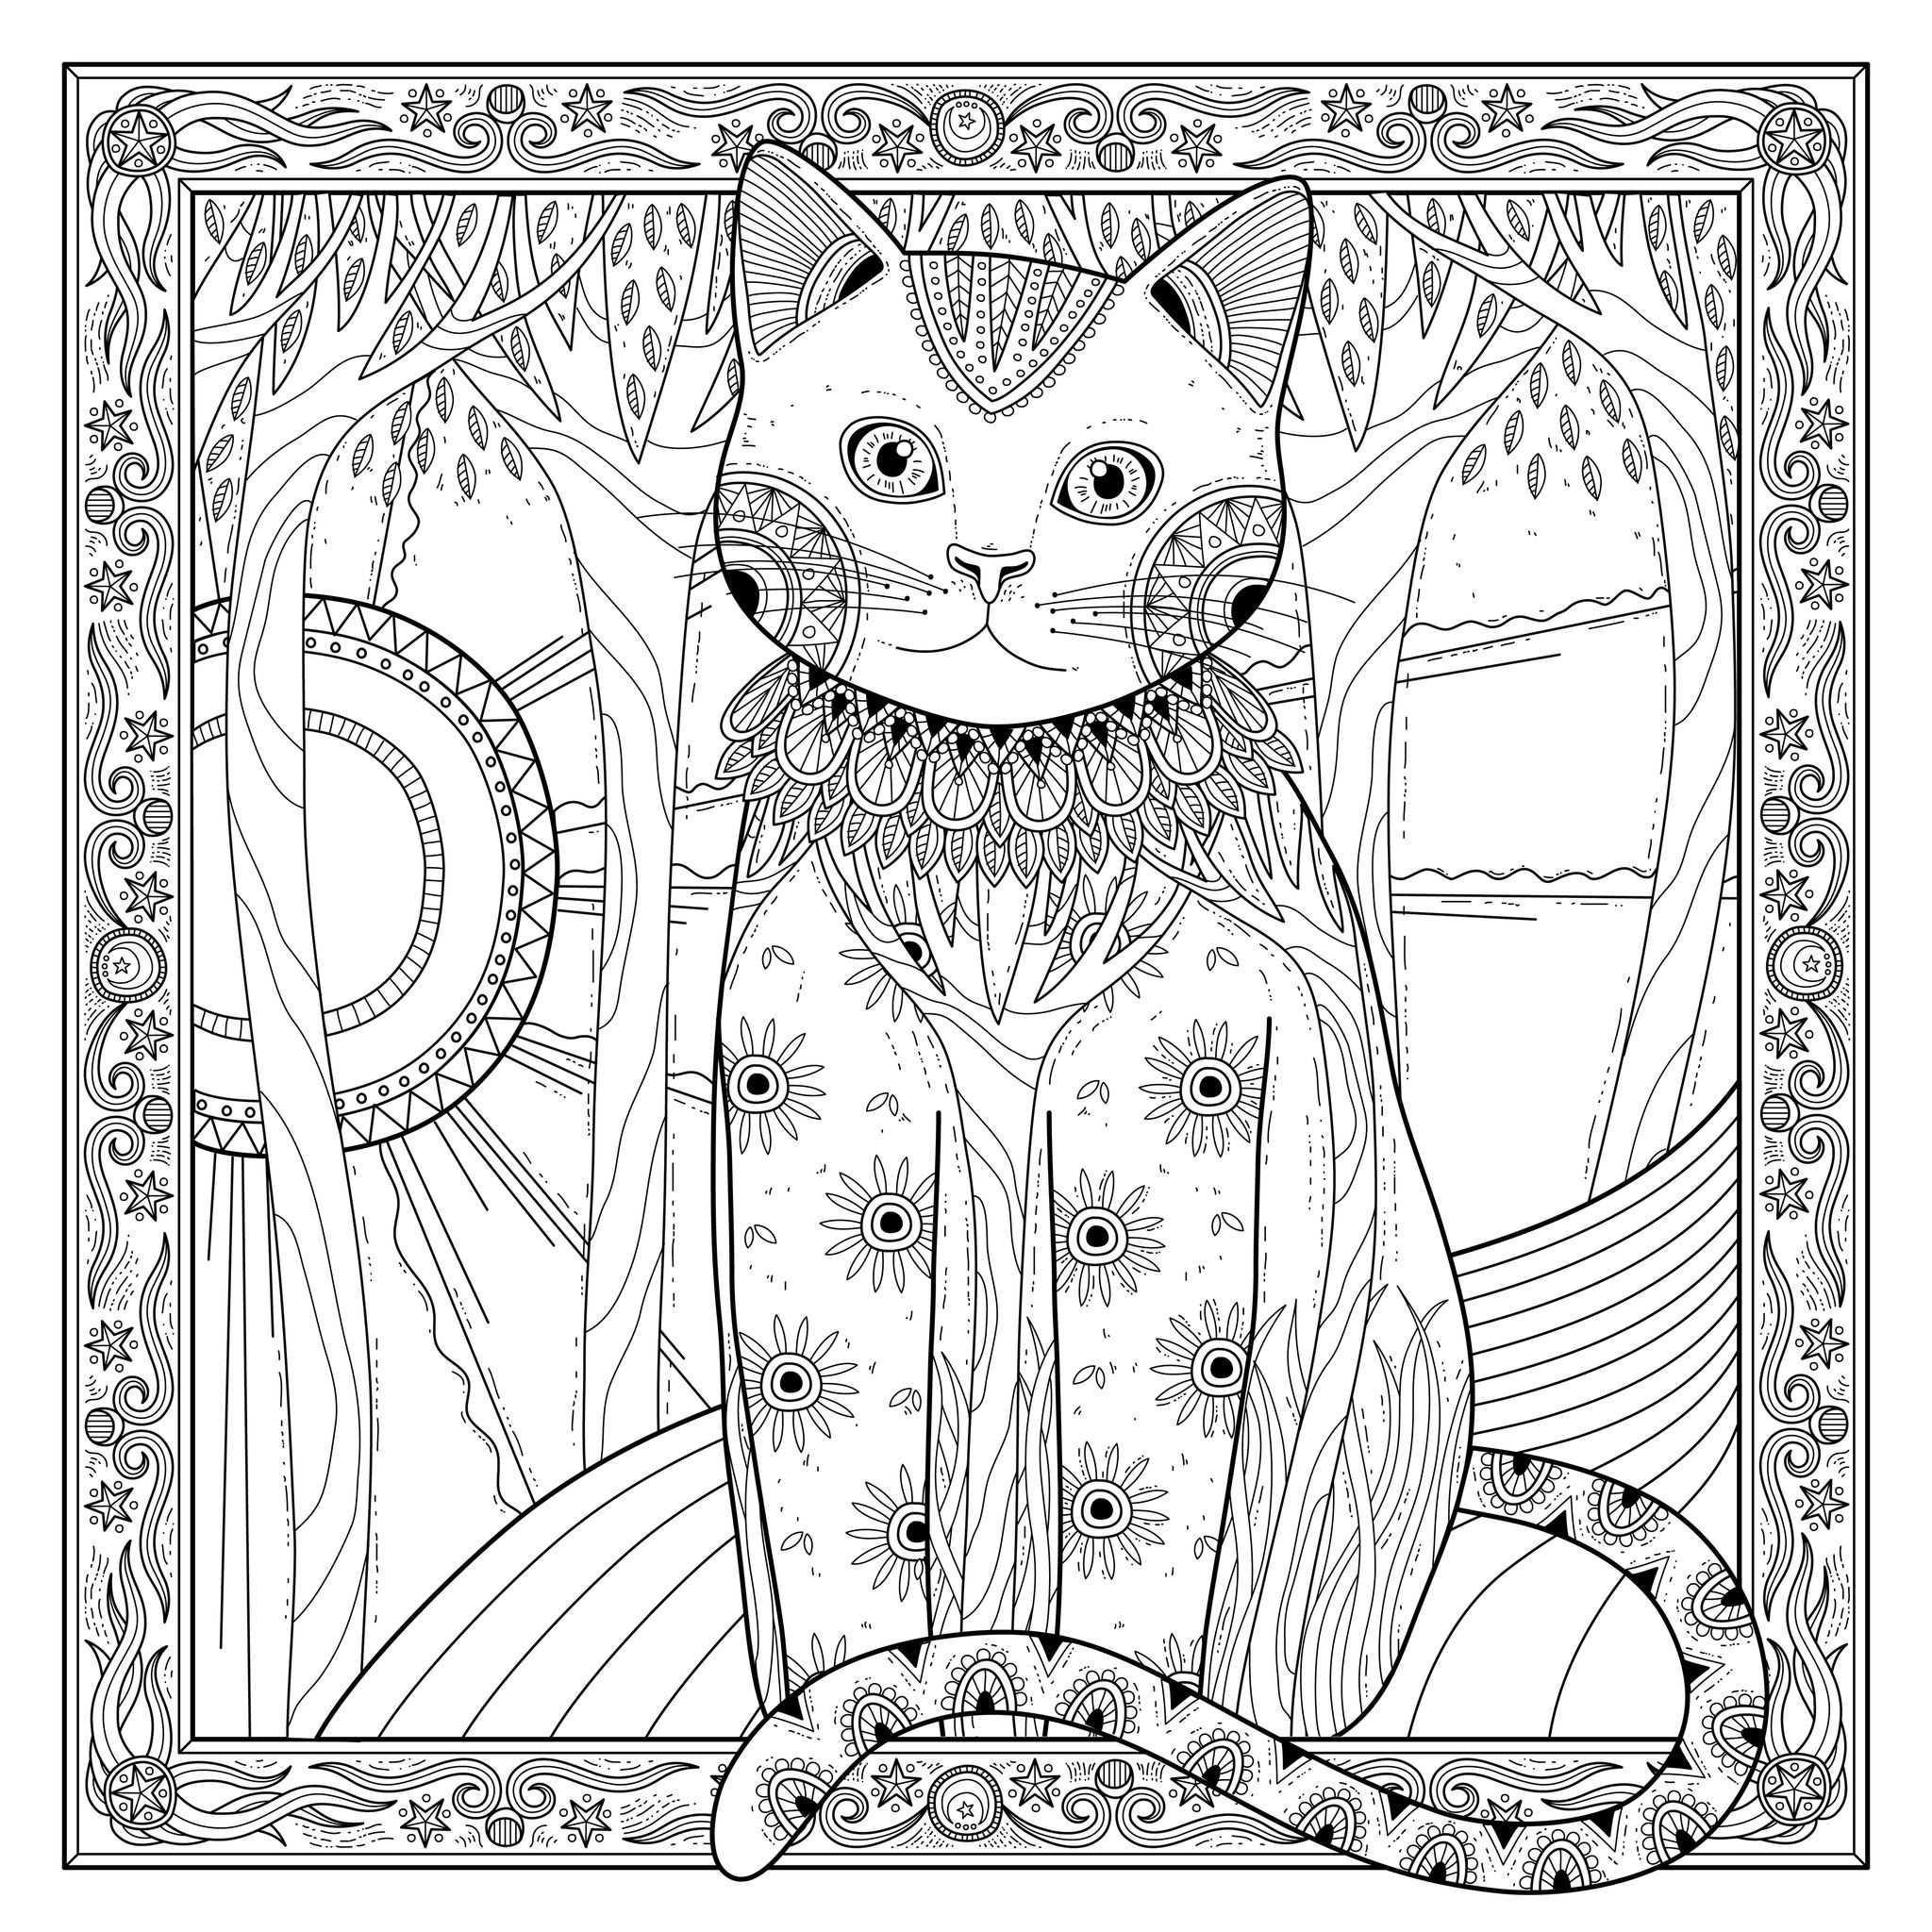 30 Desenhos de Gatos para Imprimir e Colorir em Casa  Desenhos de gatos,  Páginas de colorir com animais, Desenhos bonitos